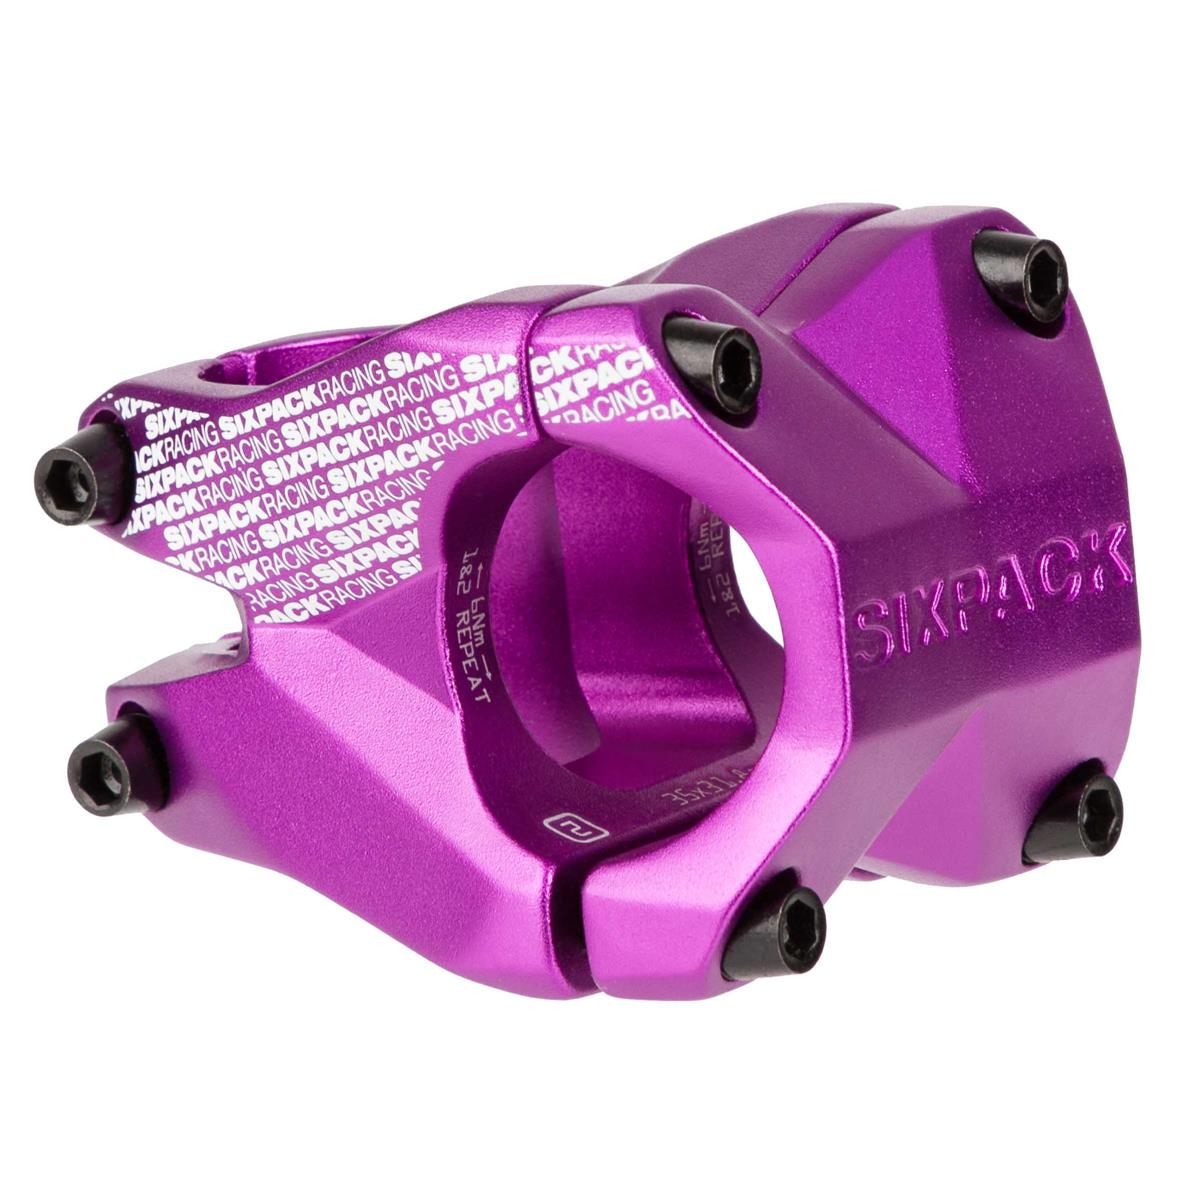 Sixpack Attacco Manubrio MTB Menace Purple, 31.8 mm, 35 mm Reach